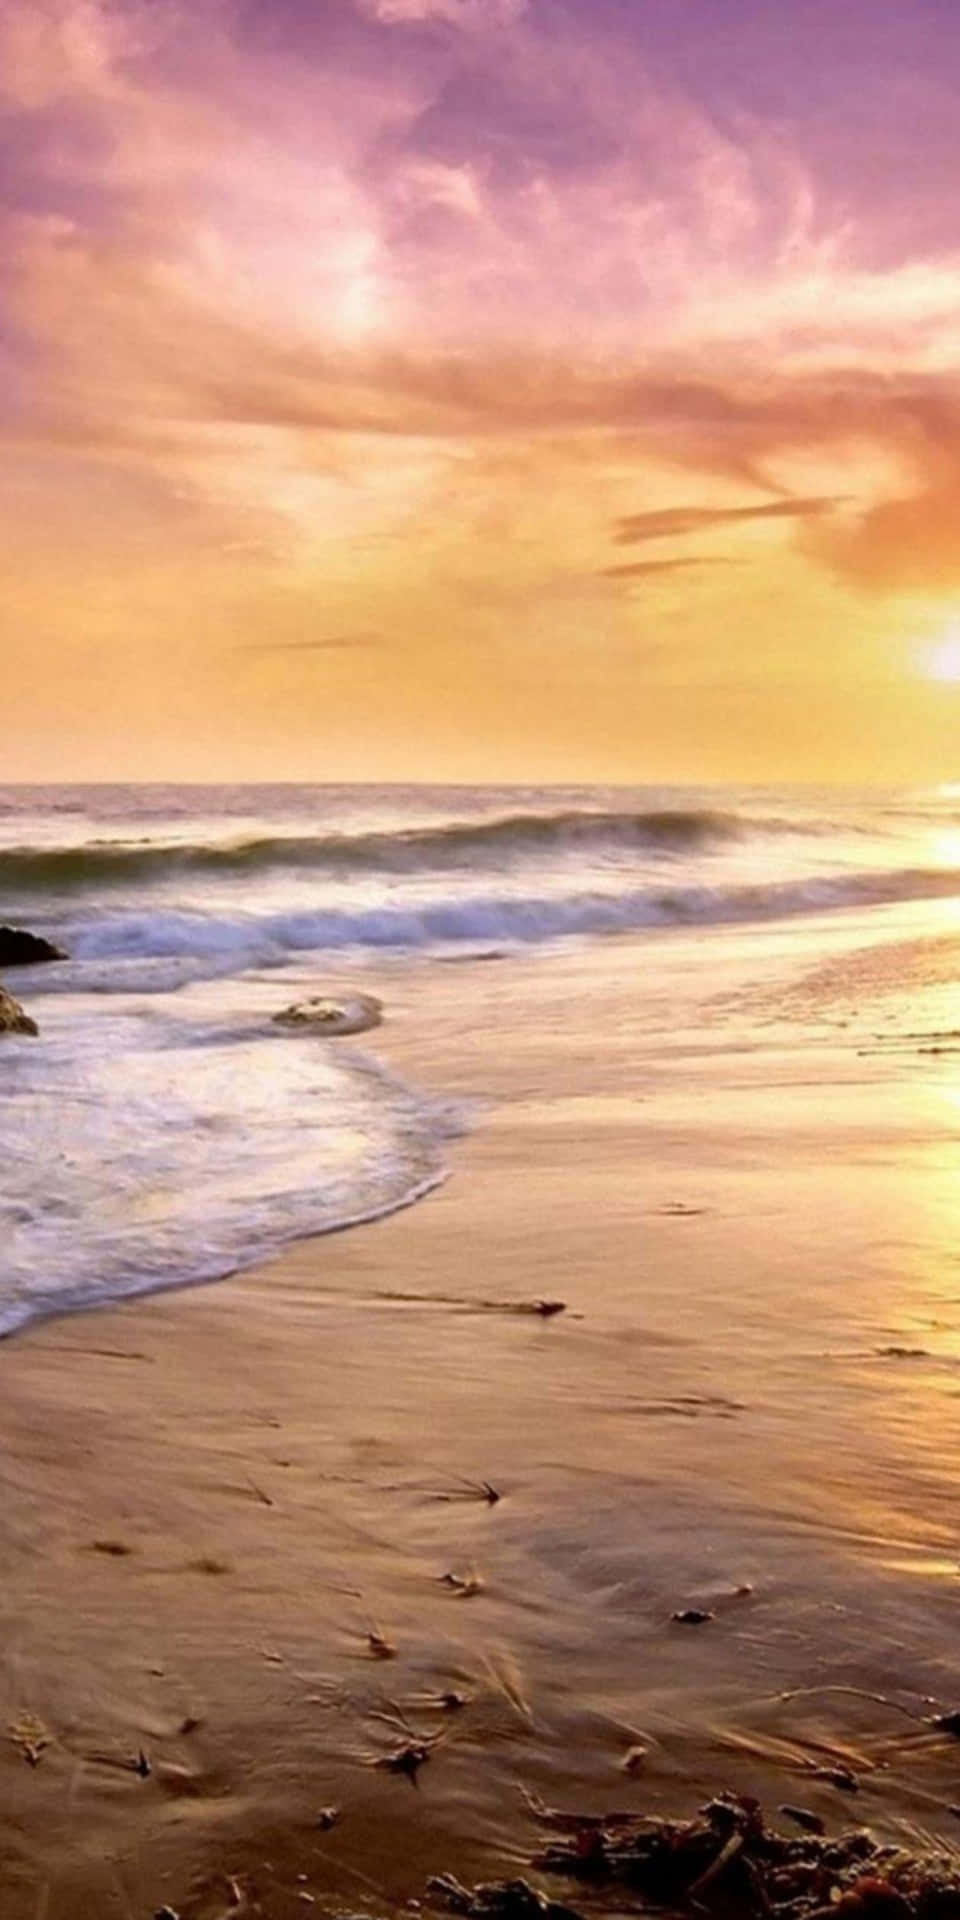 Disfrutade La Serenidad De La Playa Con El Altamente Calificado Pixel 3 De Google.